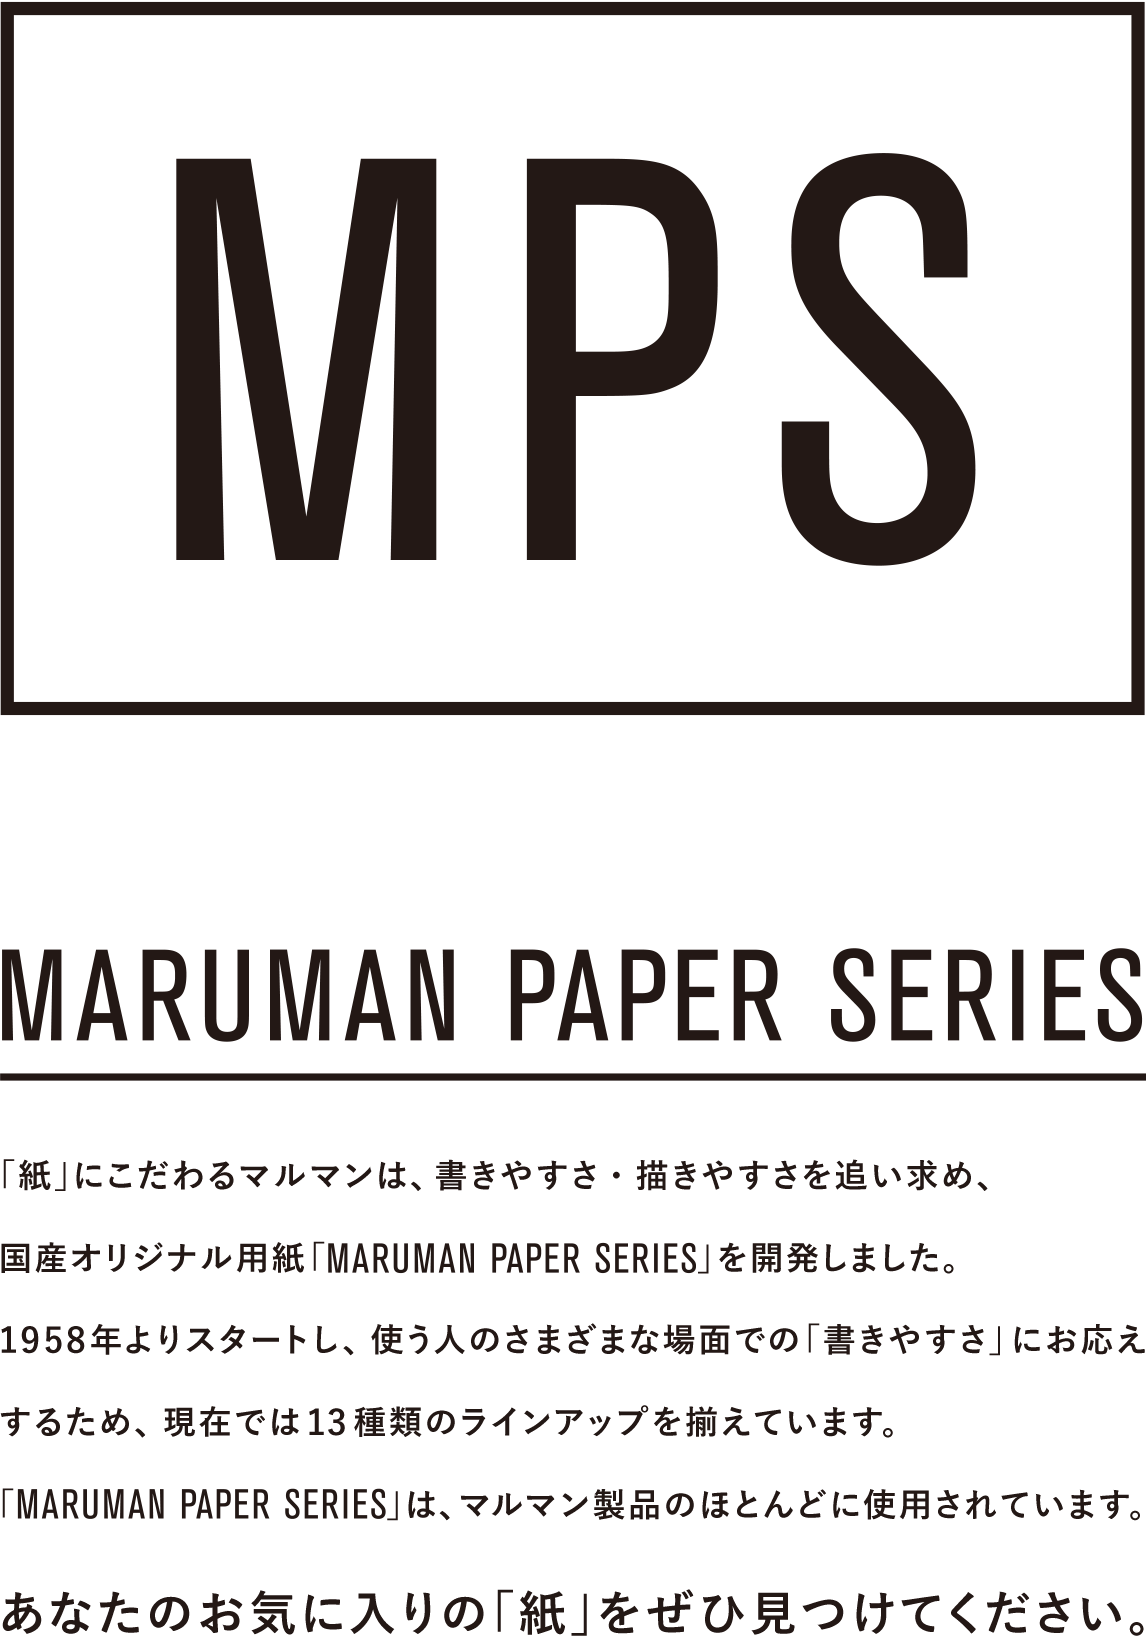 MARUMAN PAPER SERIES